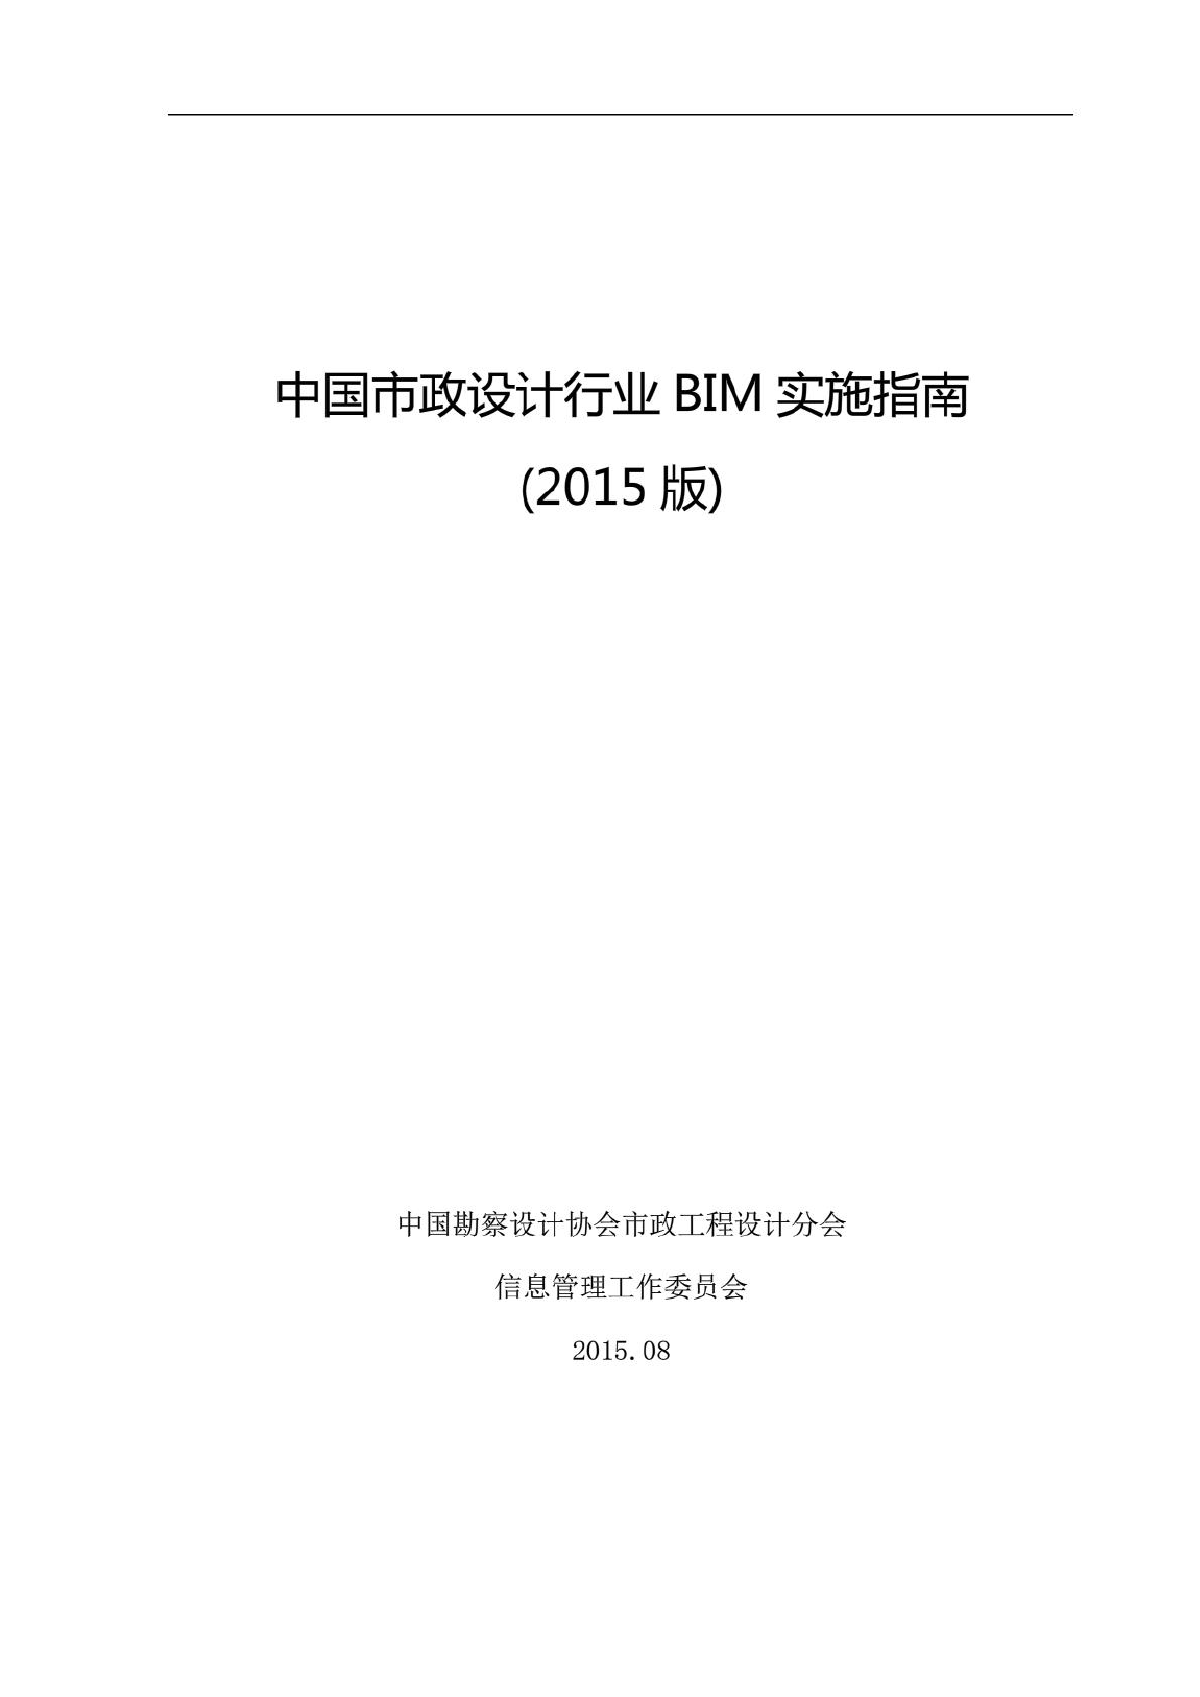 中国市政行业BIM实施指南(正式稿)